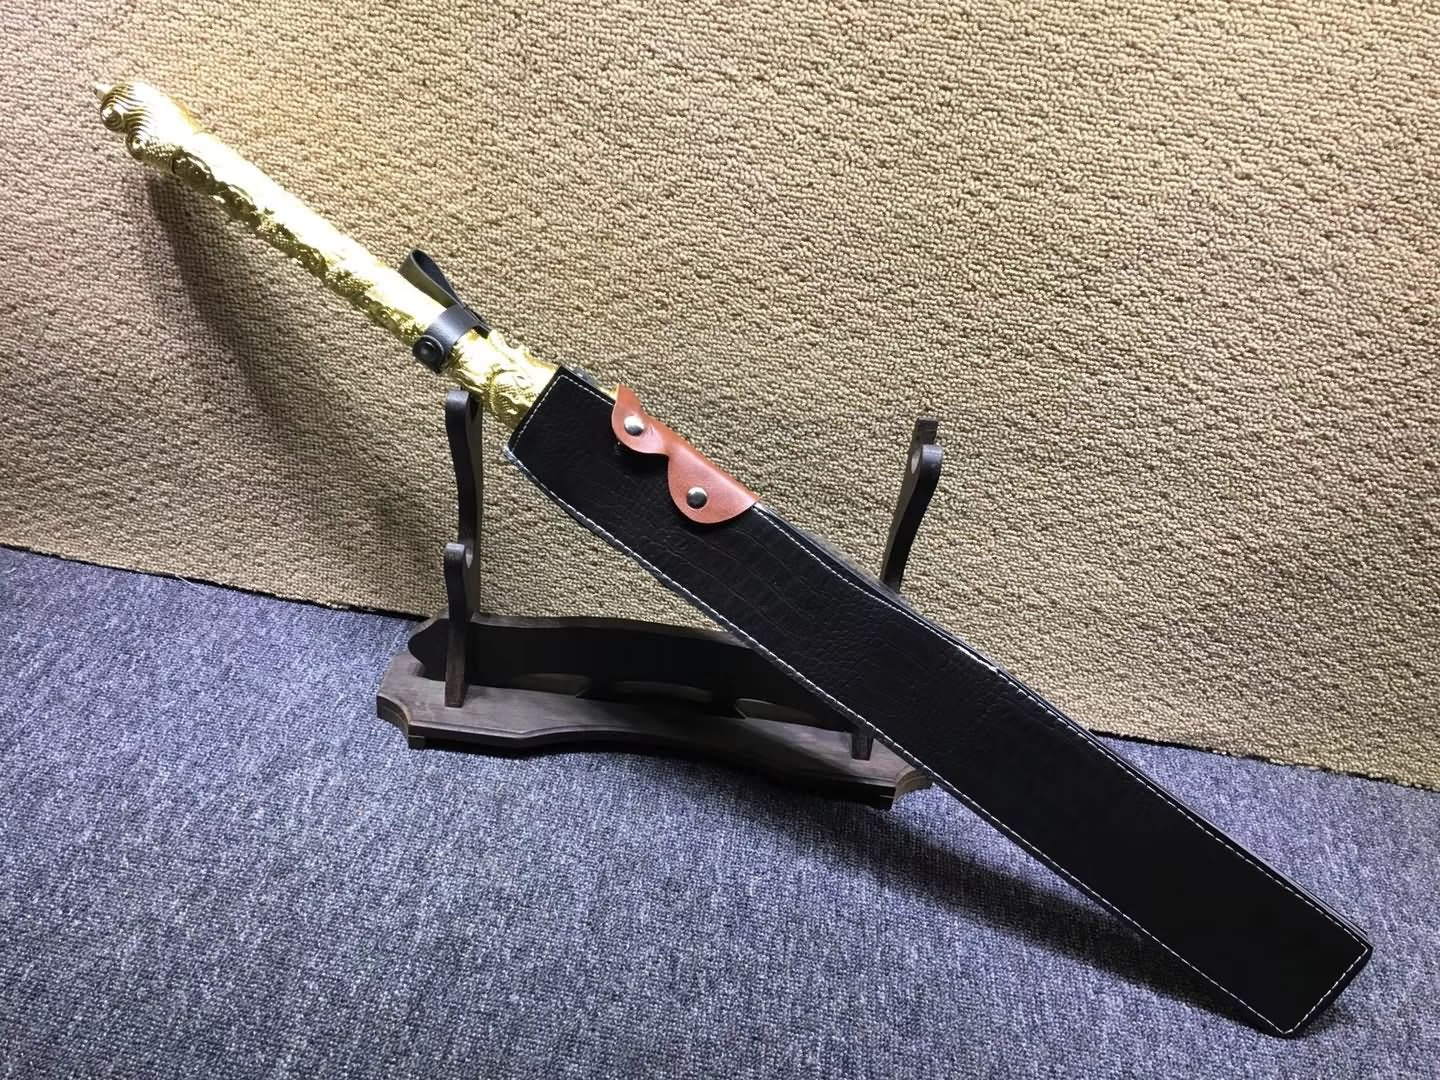 Husa Knife,Hu SA Chang Dao,High carbon steel blade,Leather - Chinese sword shop